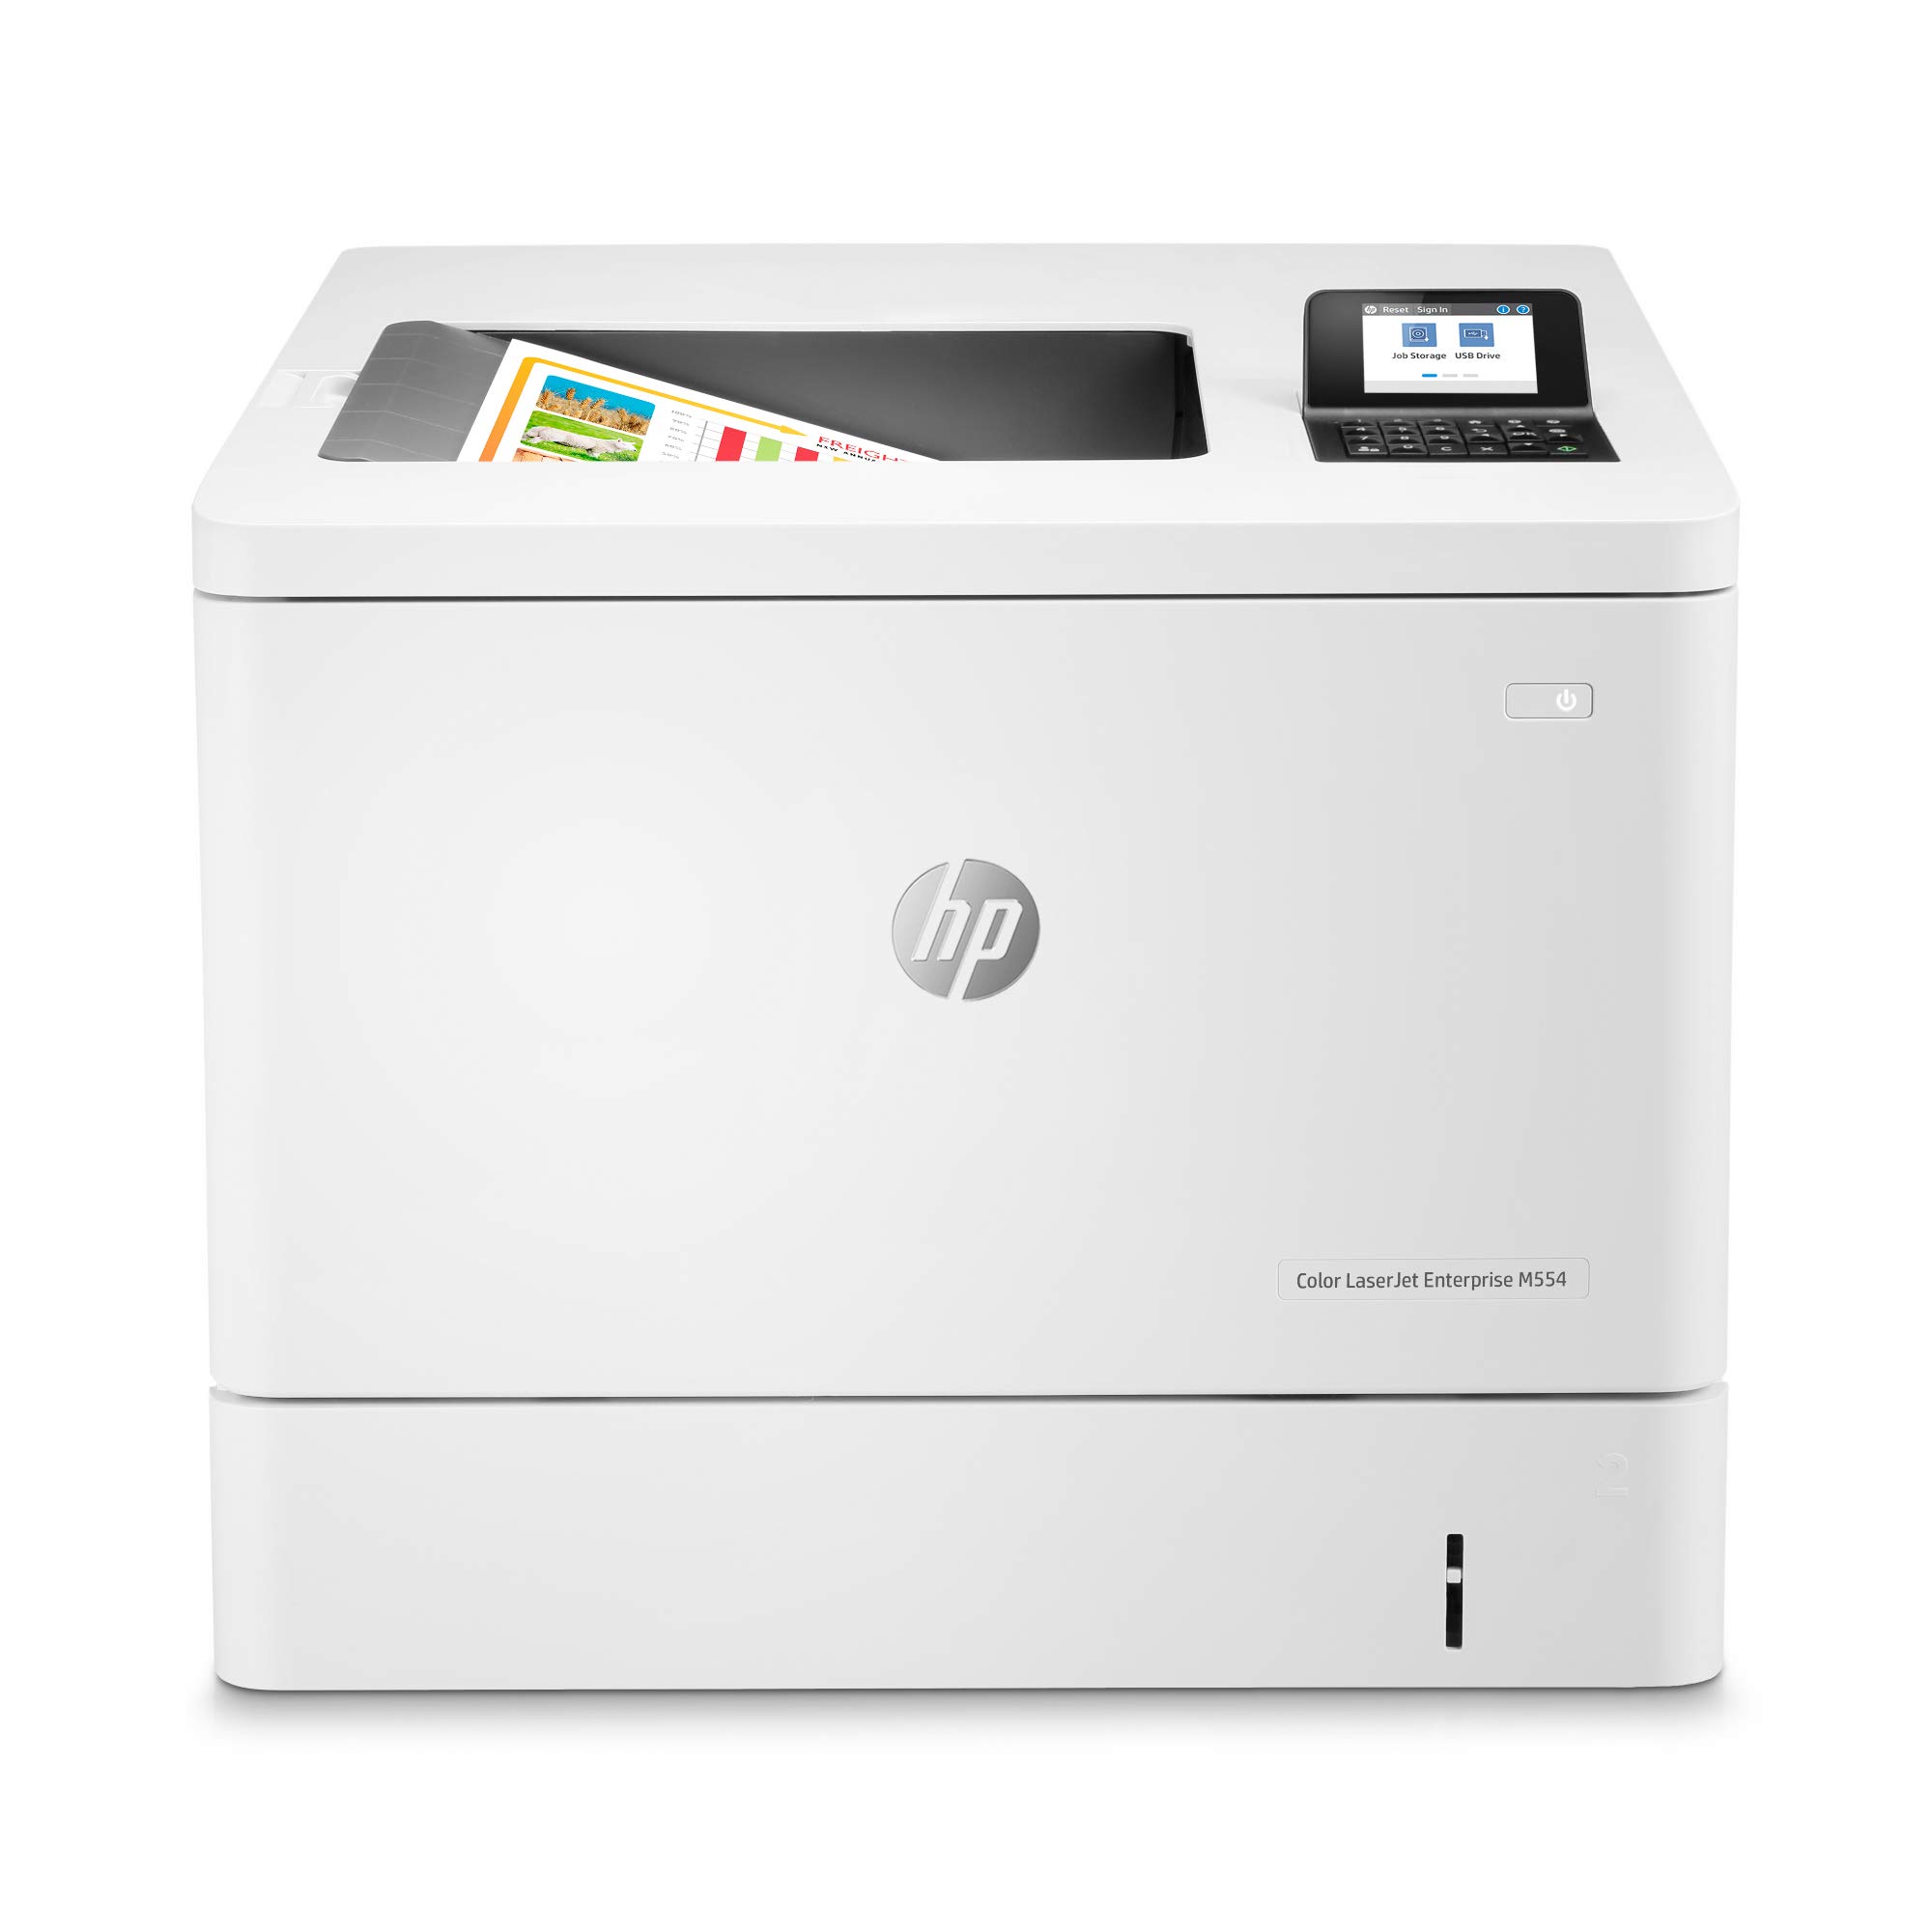 HP Imprimante recto verso couleur LaserJet Enterprise M554dn (7ZU81A)